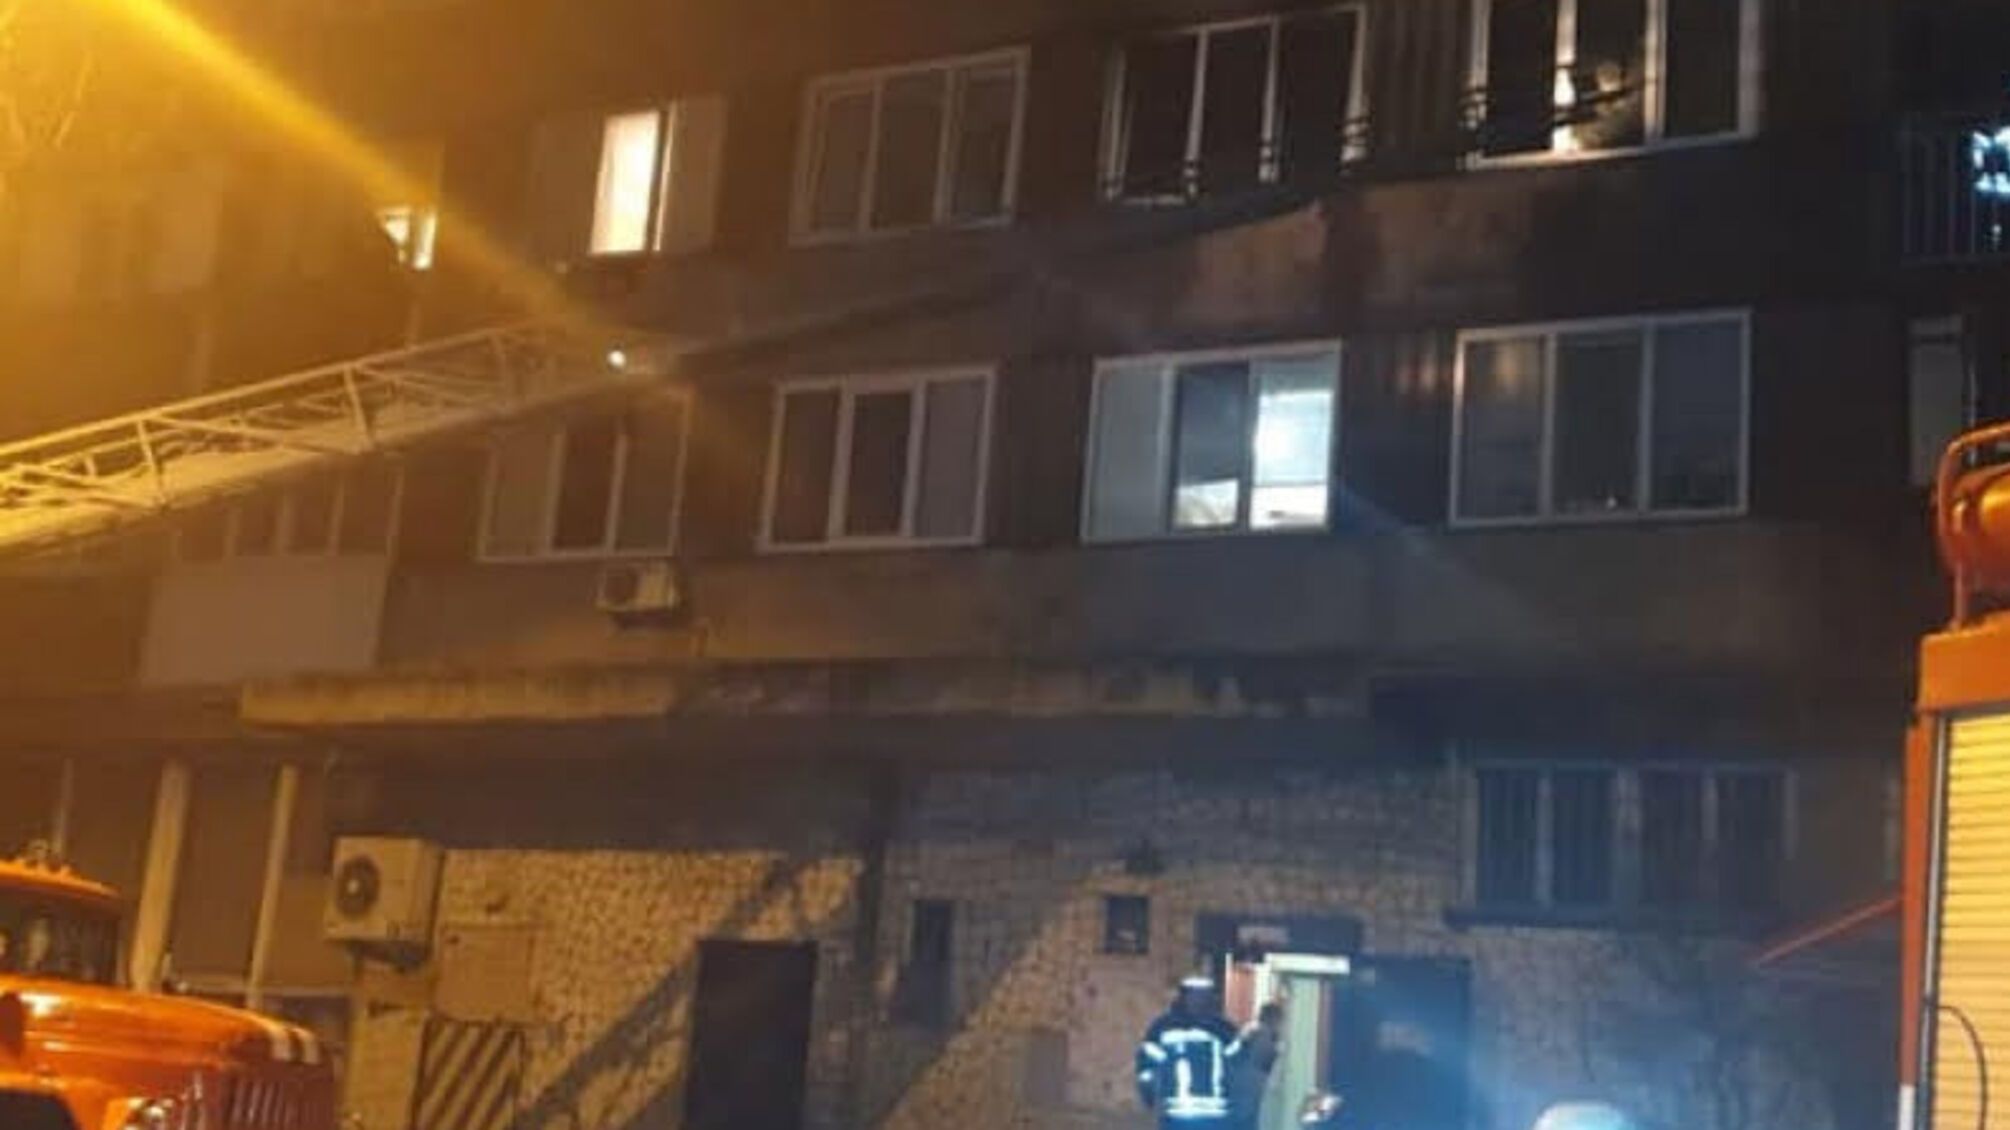 м. Київ: у результаті пожежі в багатоповерхівці загинуло двоє осіб